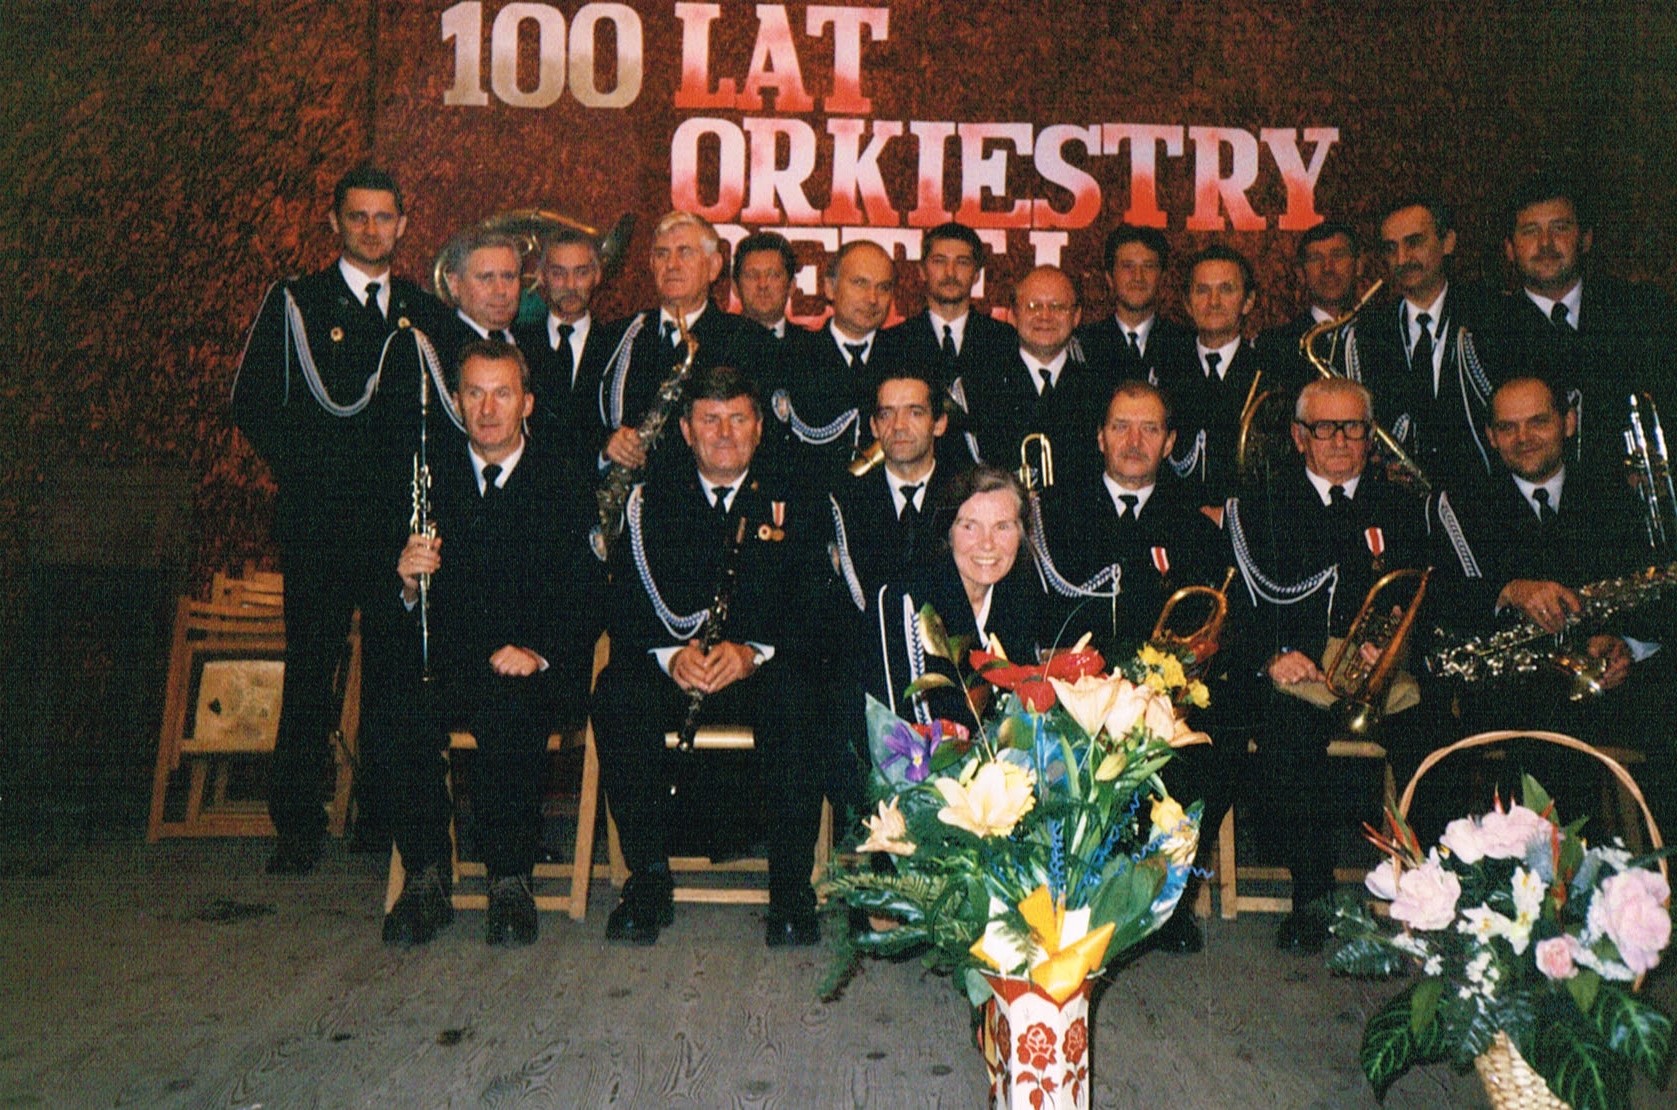 Orkiestra dęta w Ozorkowie 100 lat.jpg